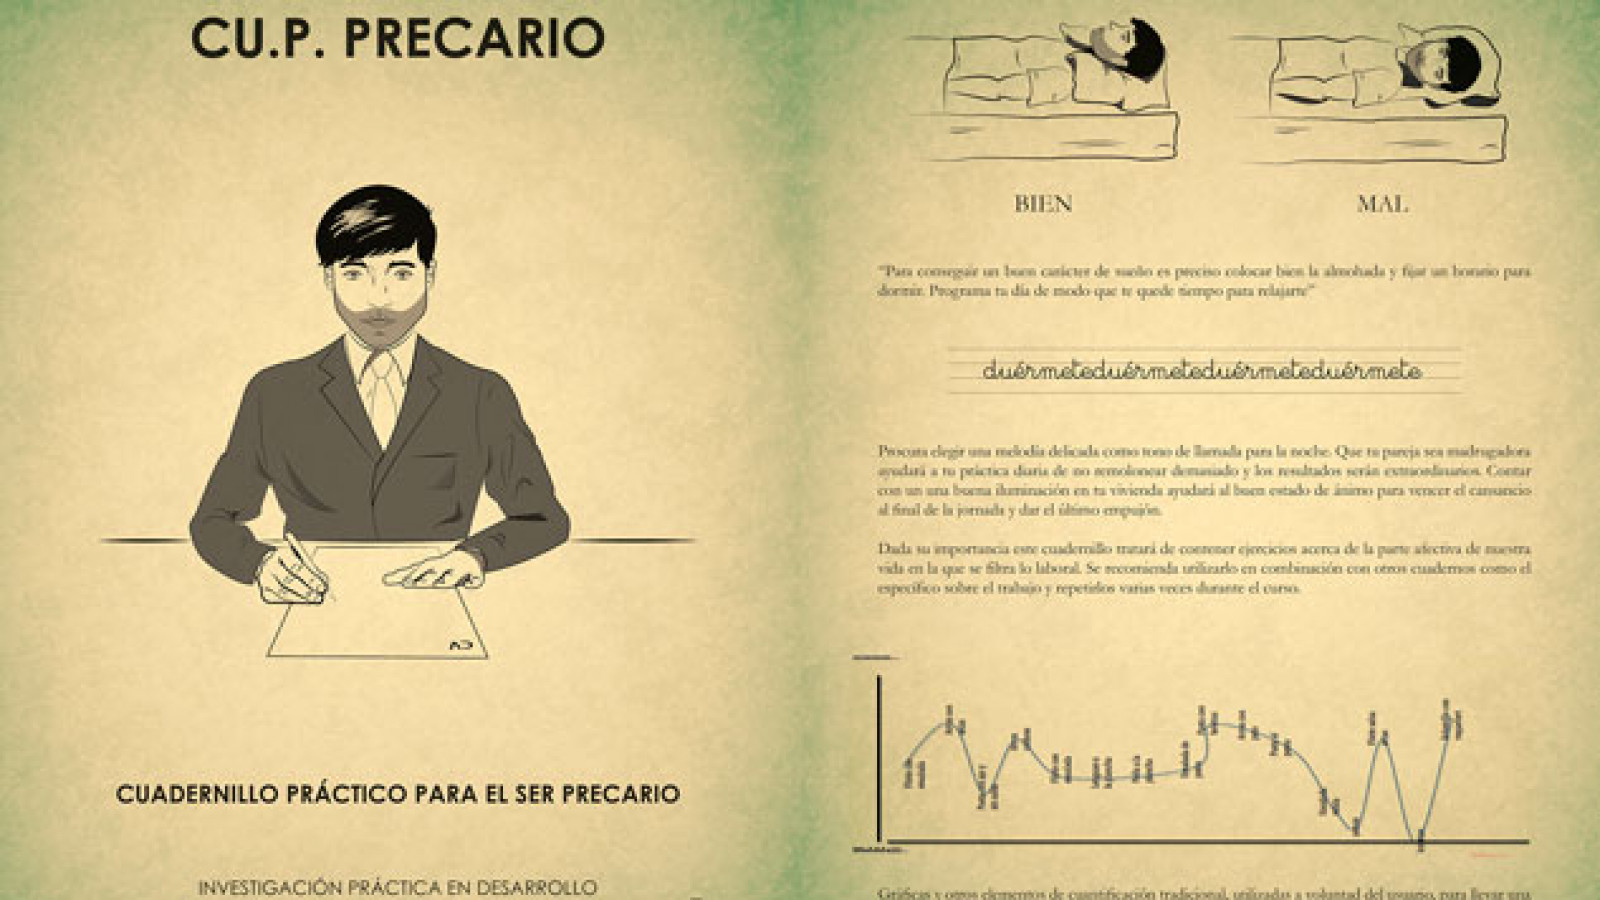 C.U.P Precario, cuadernillo práctico para el ser precario. Paula Cueto. Exposición Inéditos 2014. Be virus, my friend